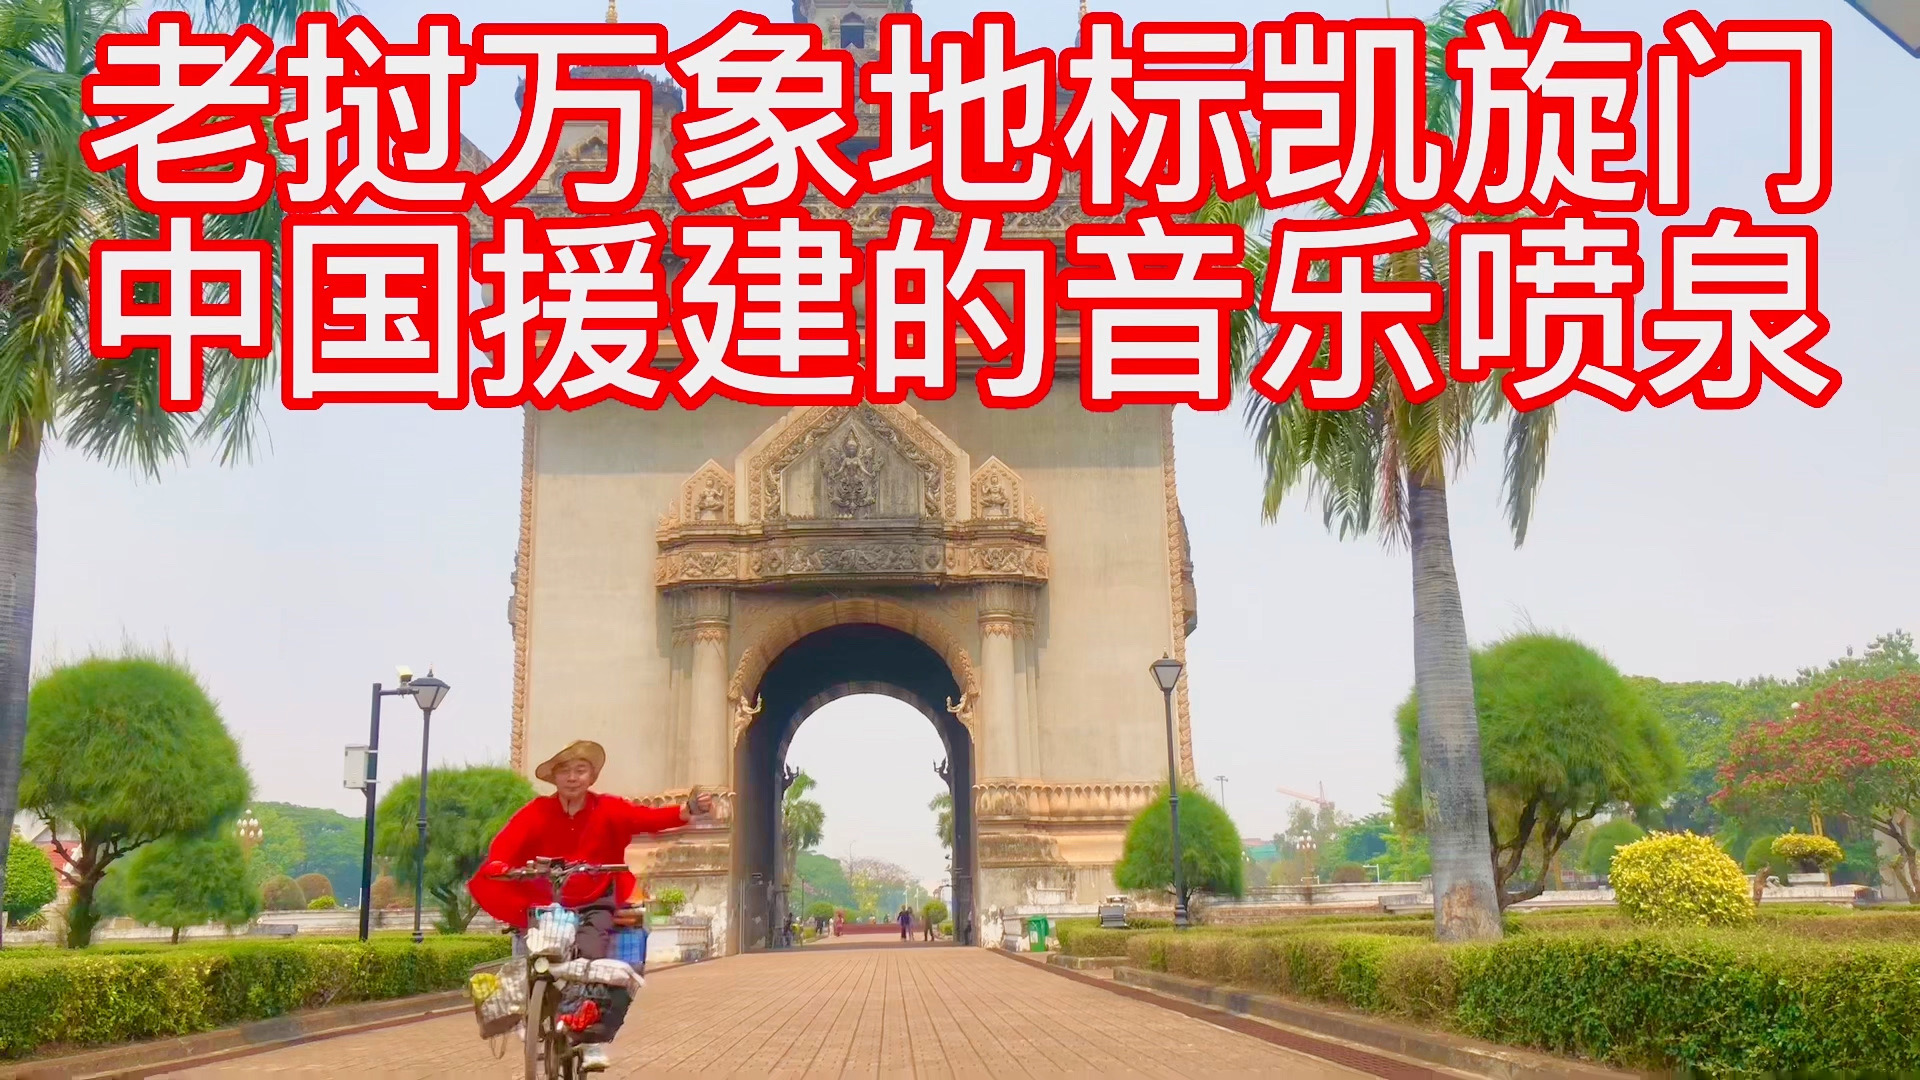 老挝万象地标：凯旋门，中国援建的音乐喷泉，老挝人民很喜欢